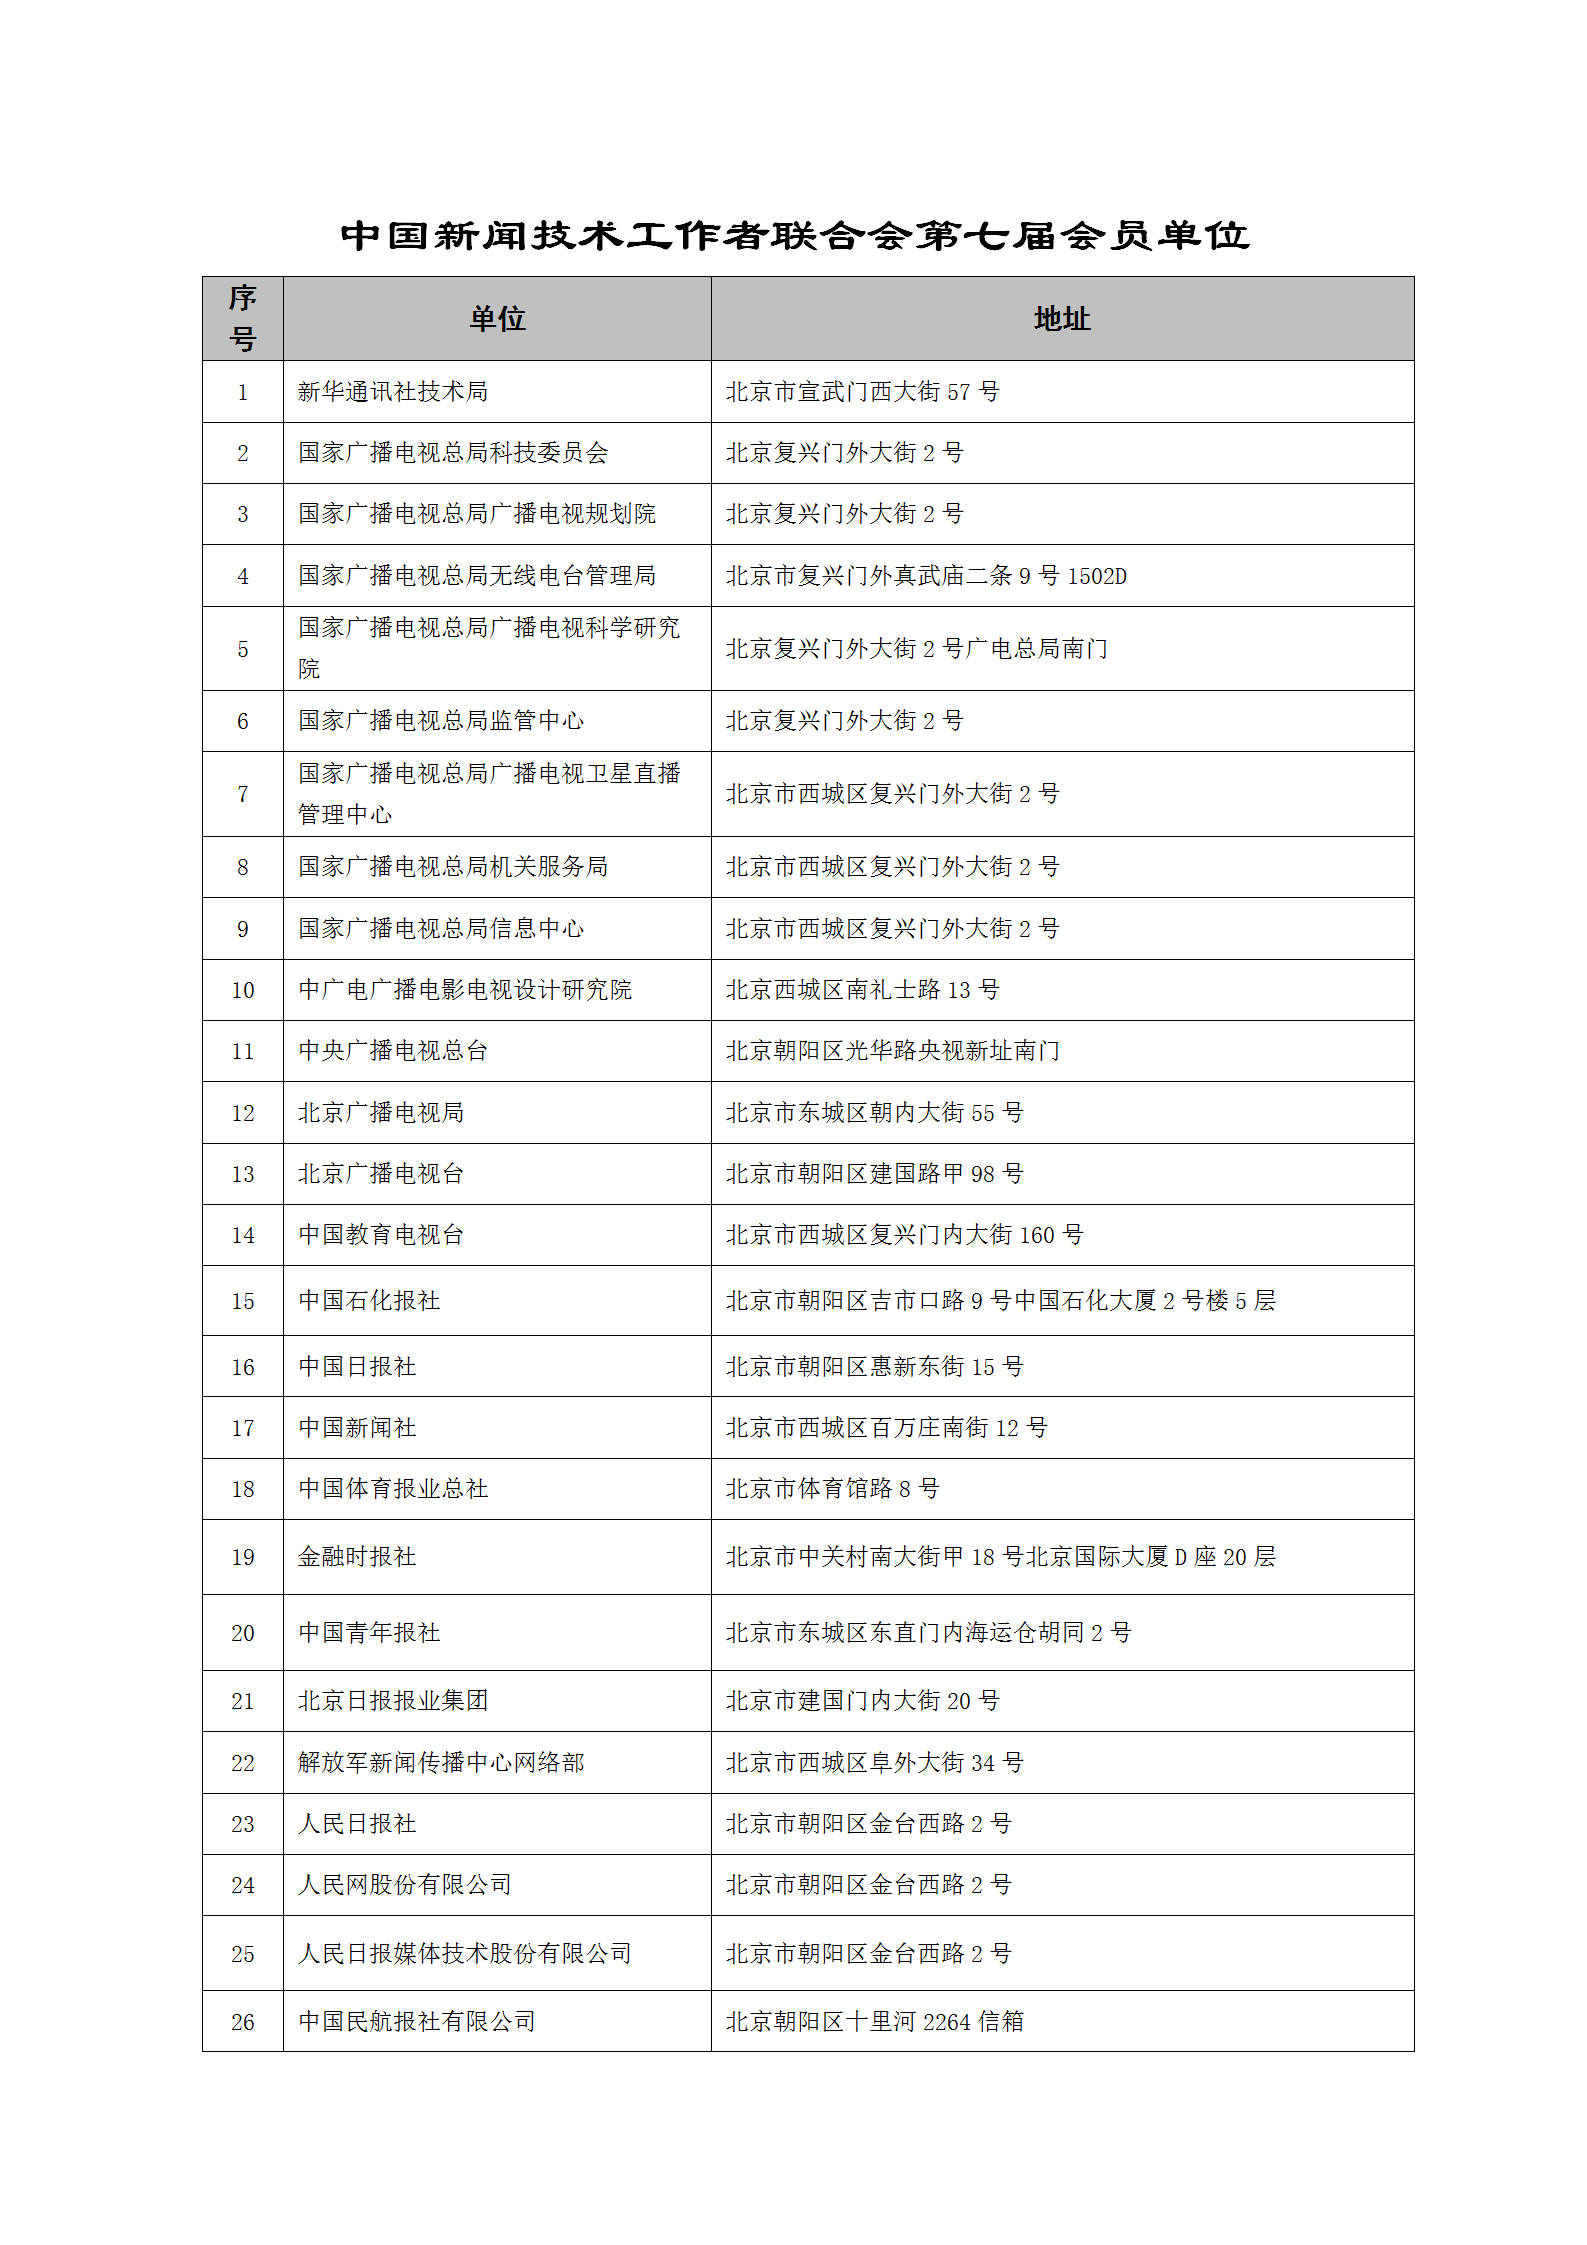 中国新闻技术工作者联合会第七届会员单位-2023.9.10(1)_01.png